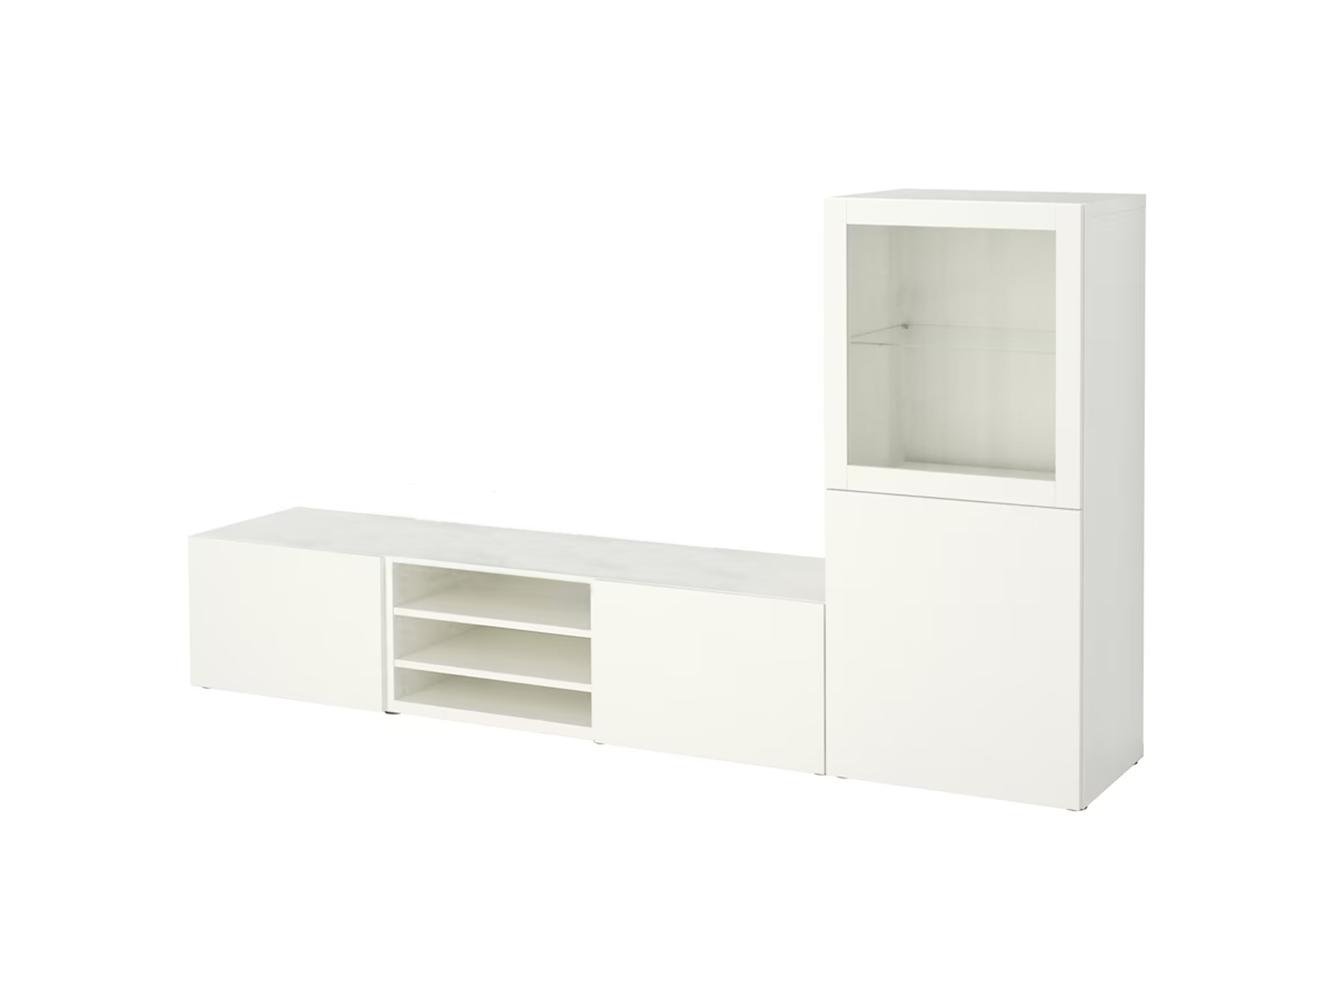 Стенка Беста 414 white ИКЕА (IKEA)  изображение товара